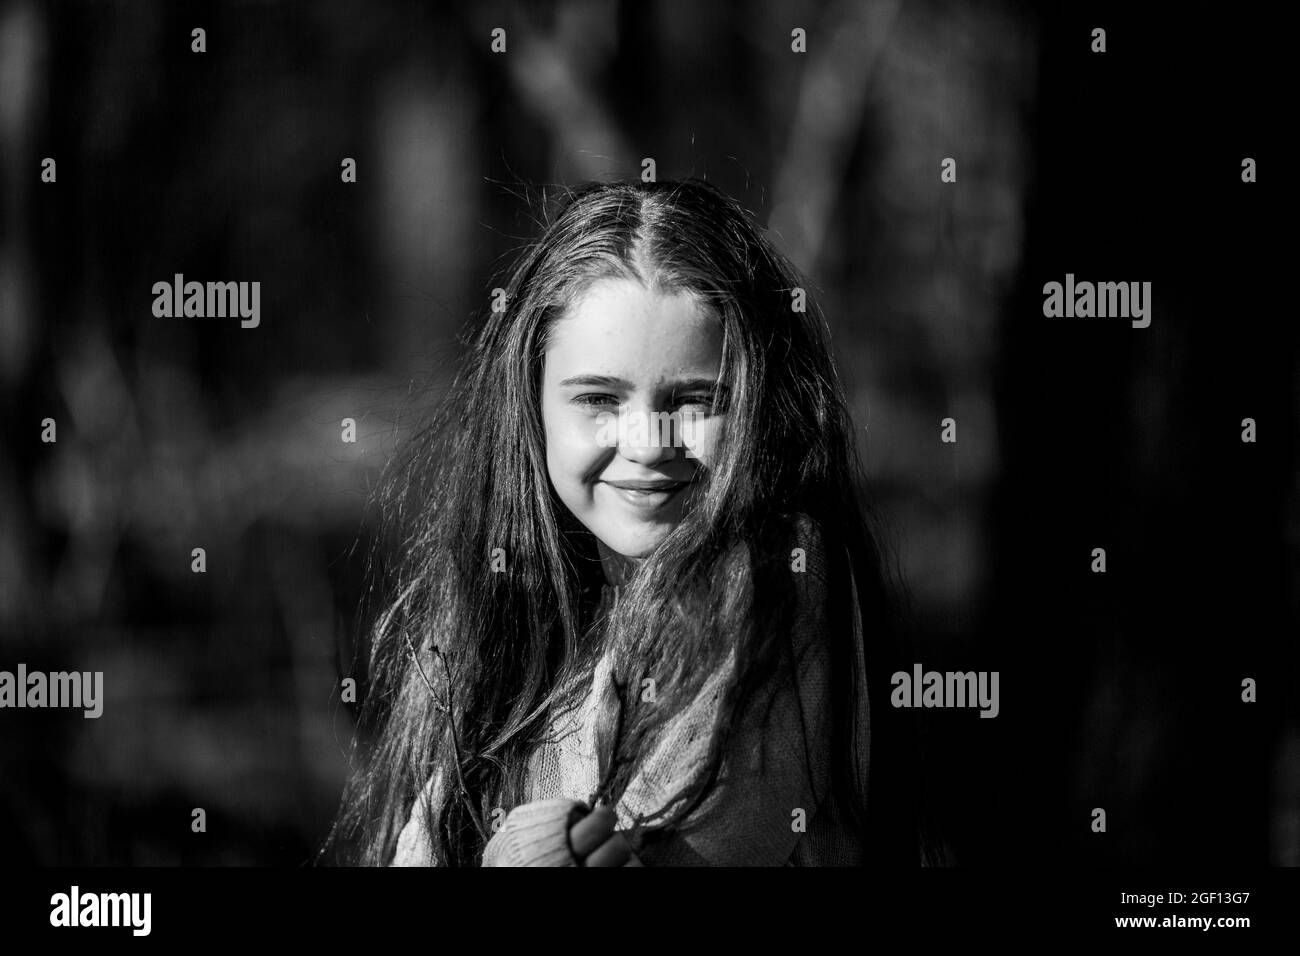 Ritratto di una ragazza adolescente per strada. Foto in bianco e nero. Foto Stock